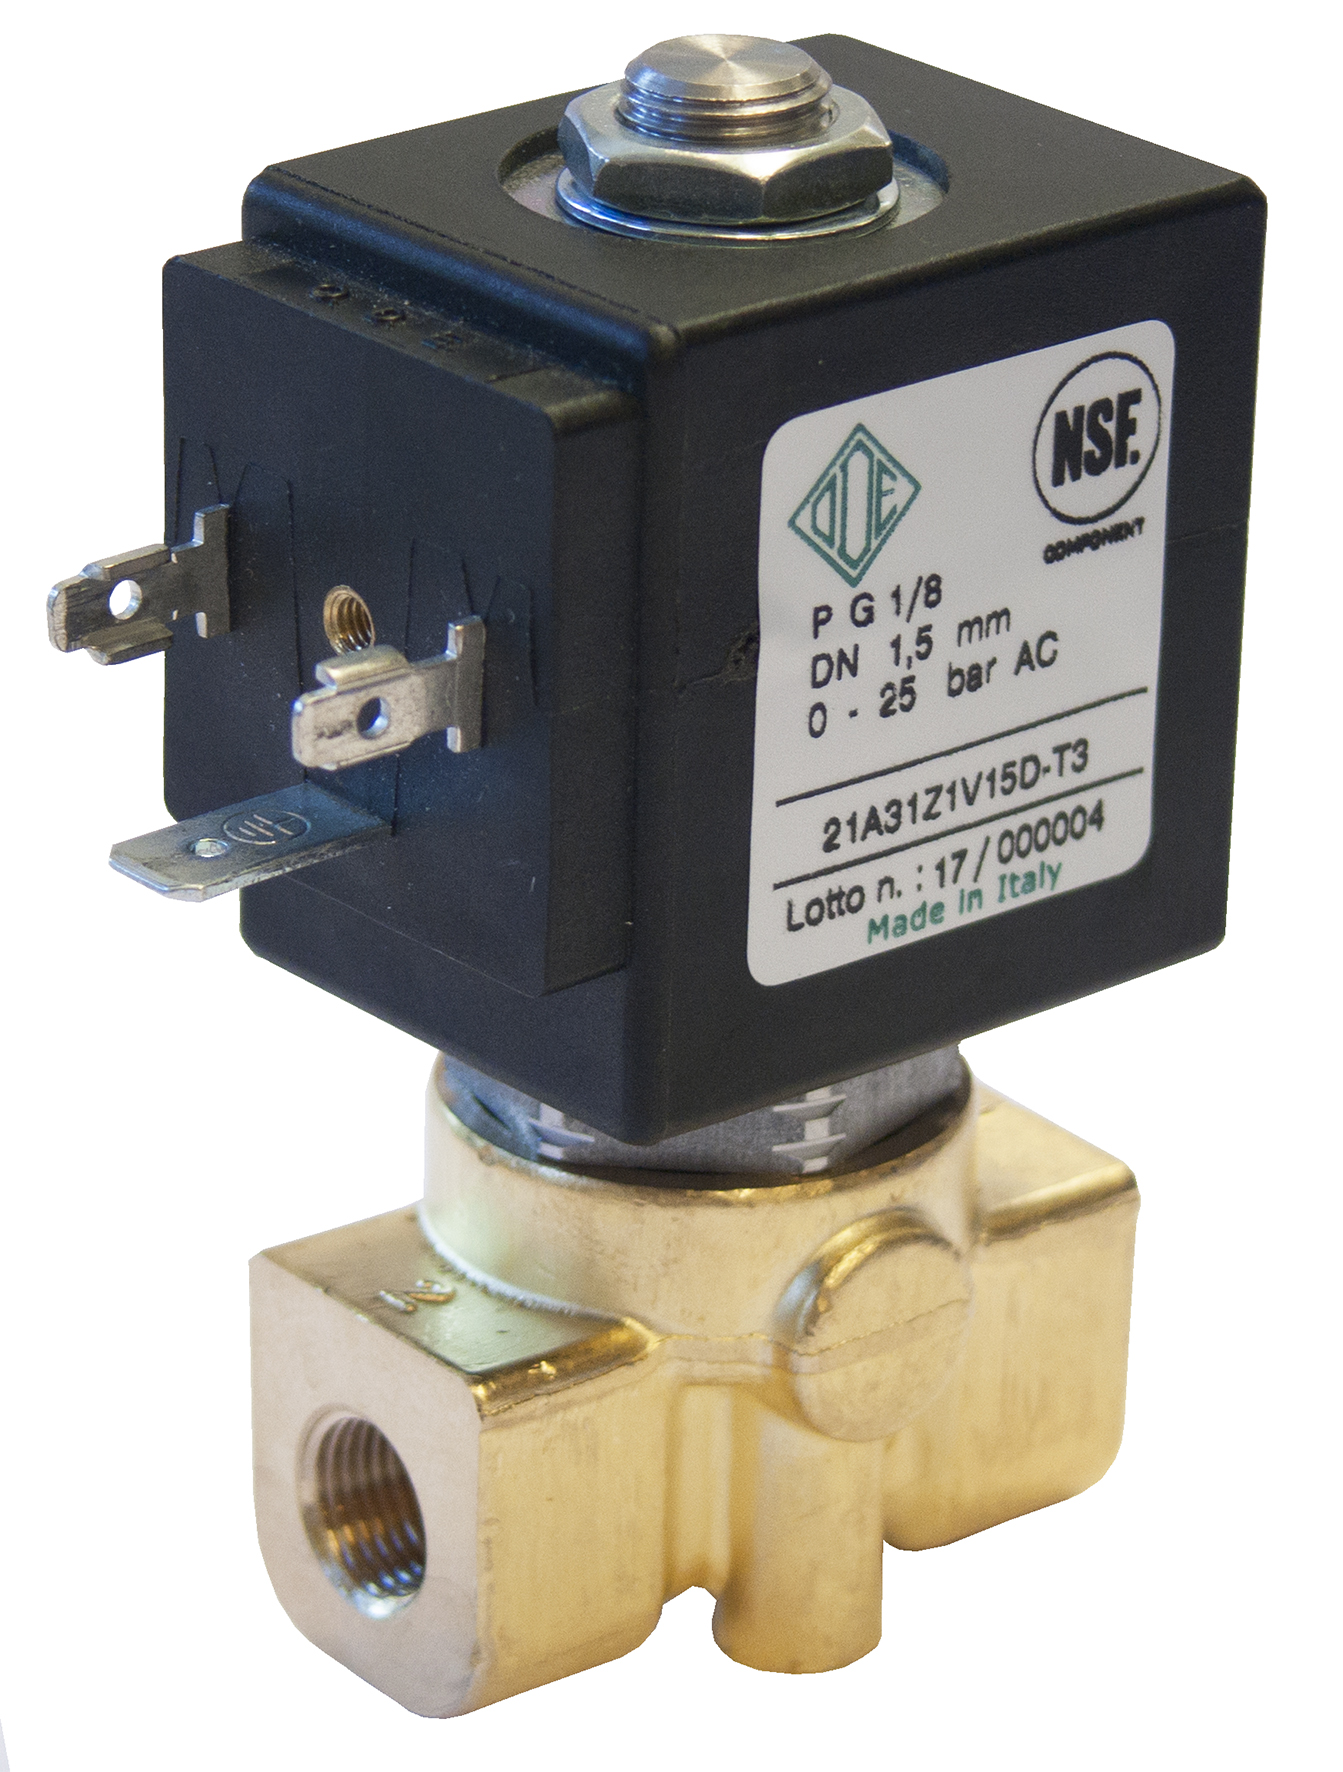 NSF-certified solenoid valves